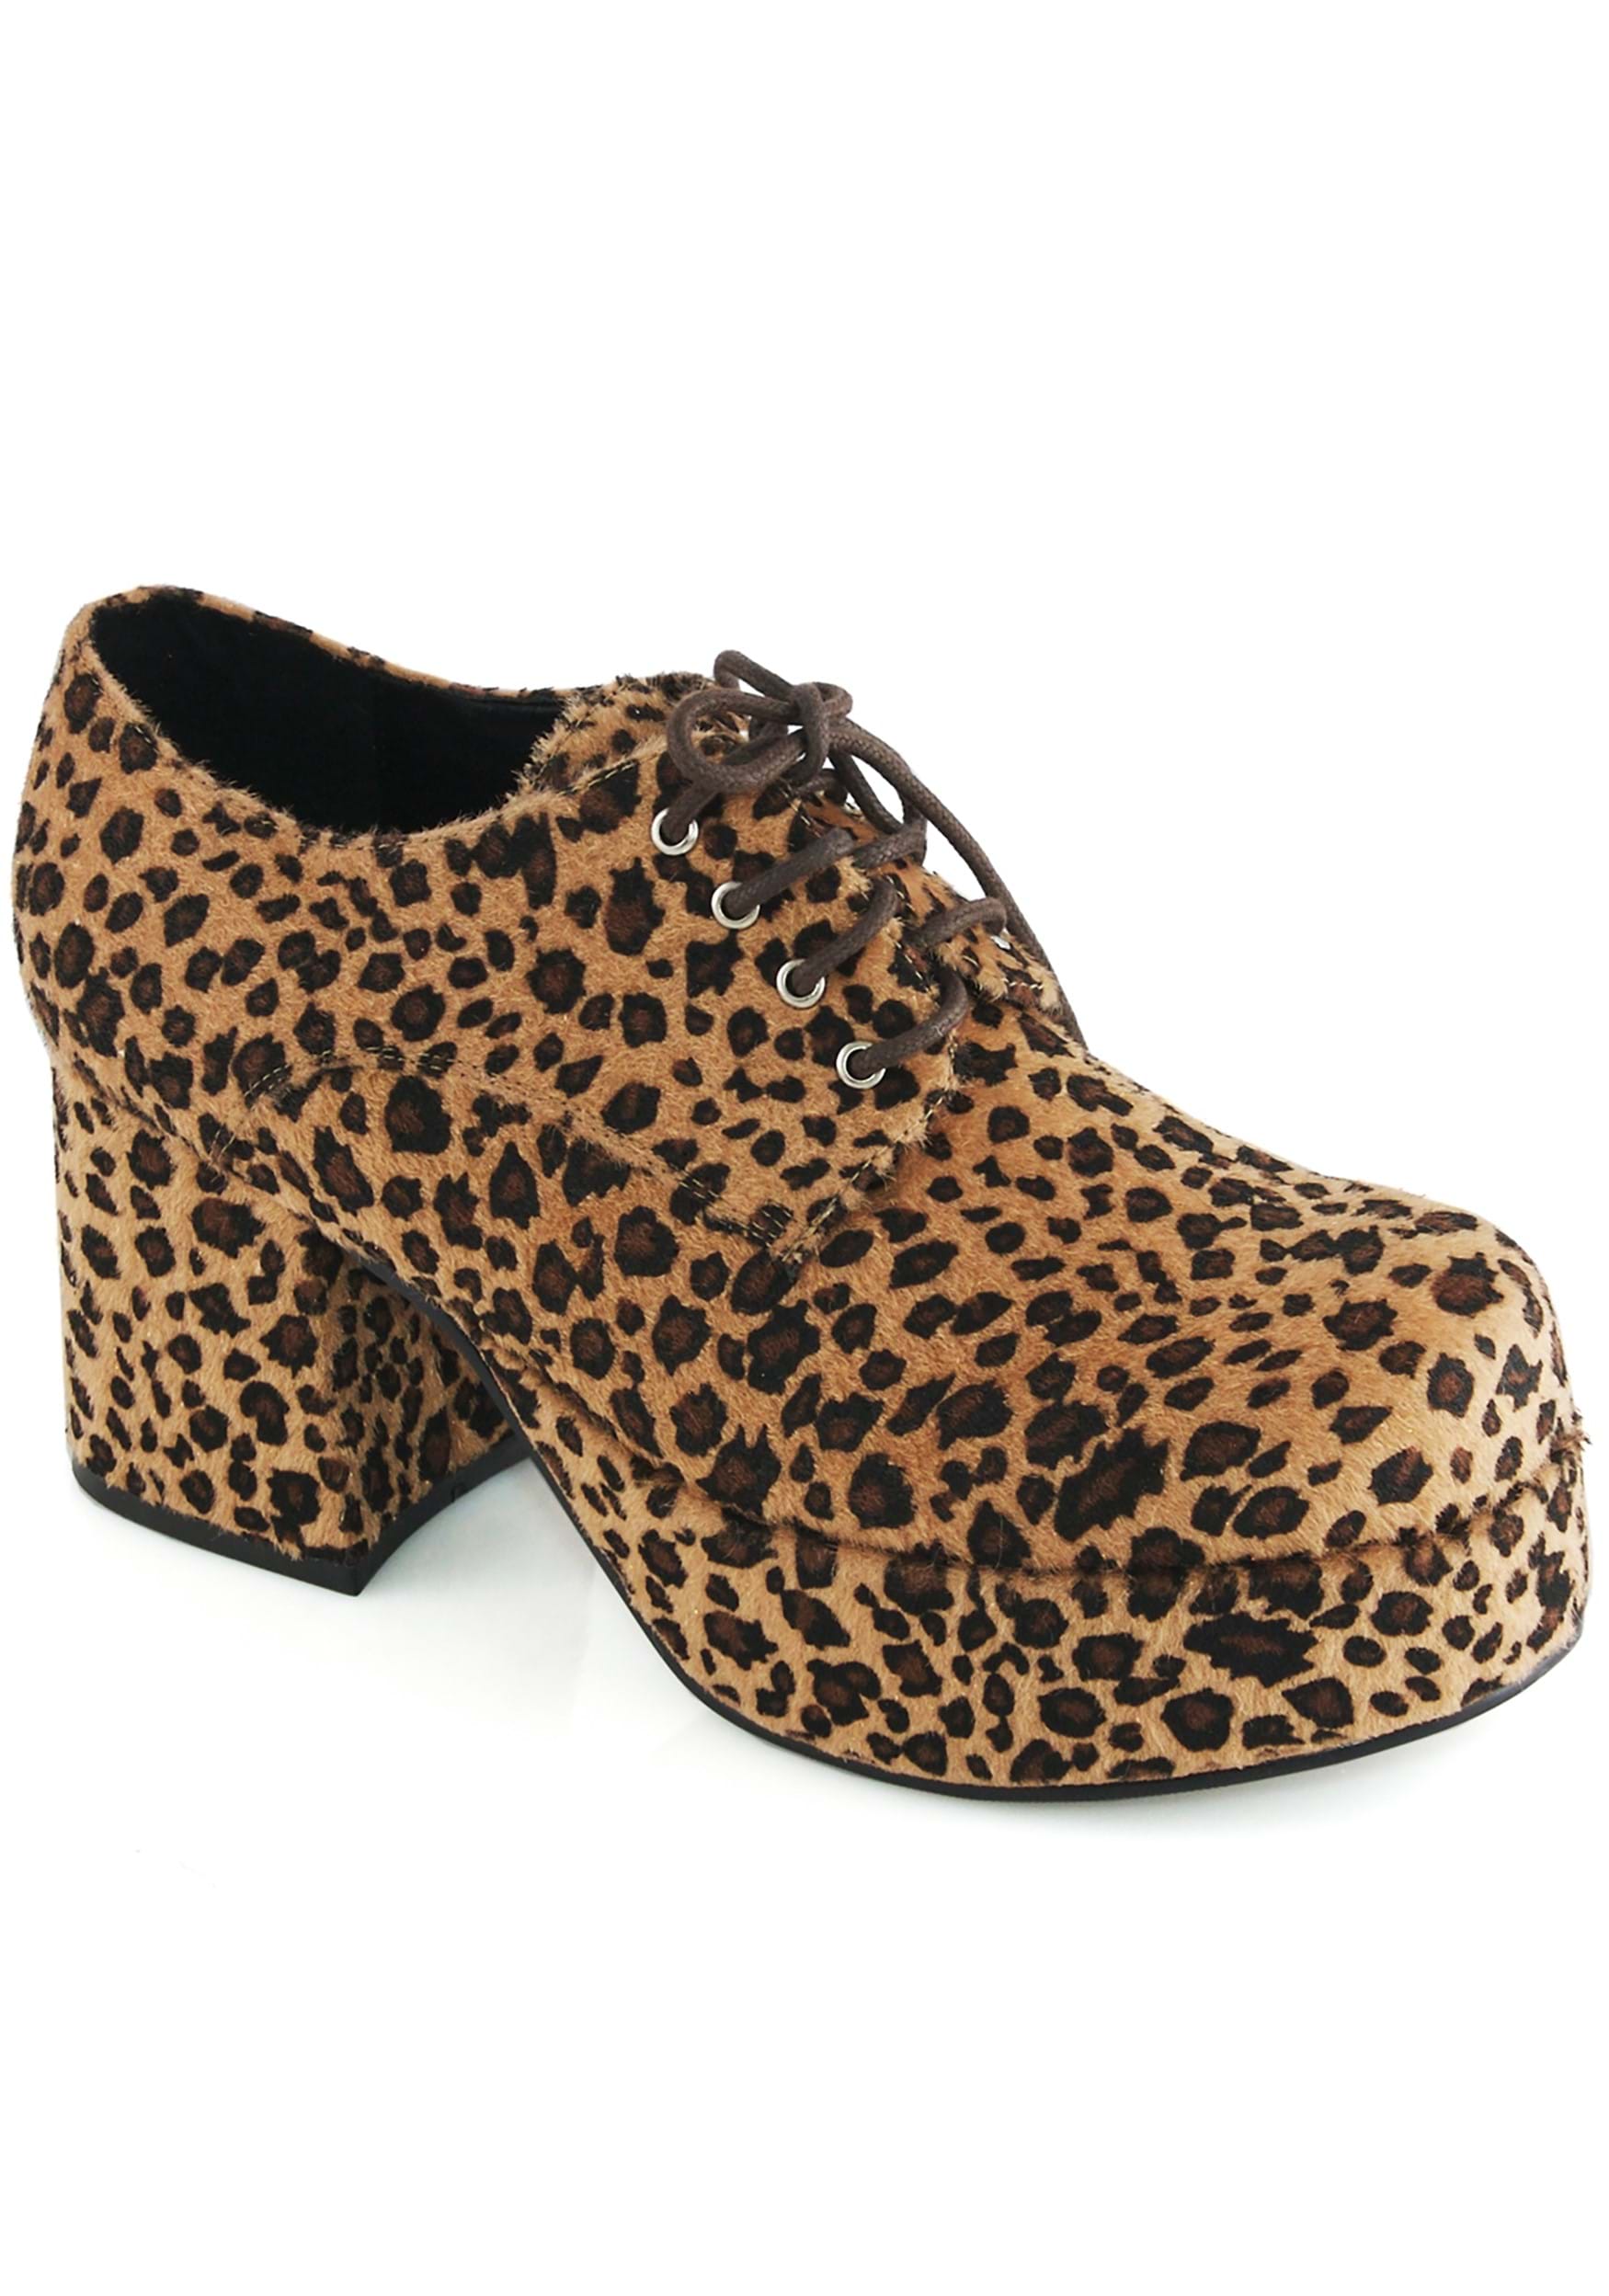 Men’s Leopard Platform Pimp Shoe